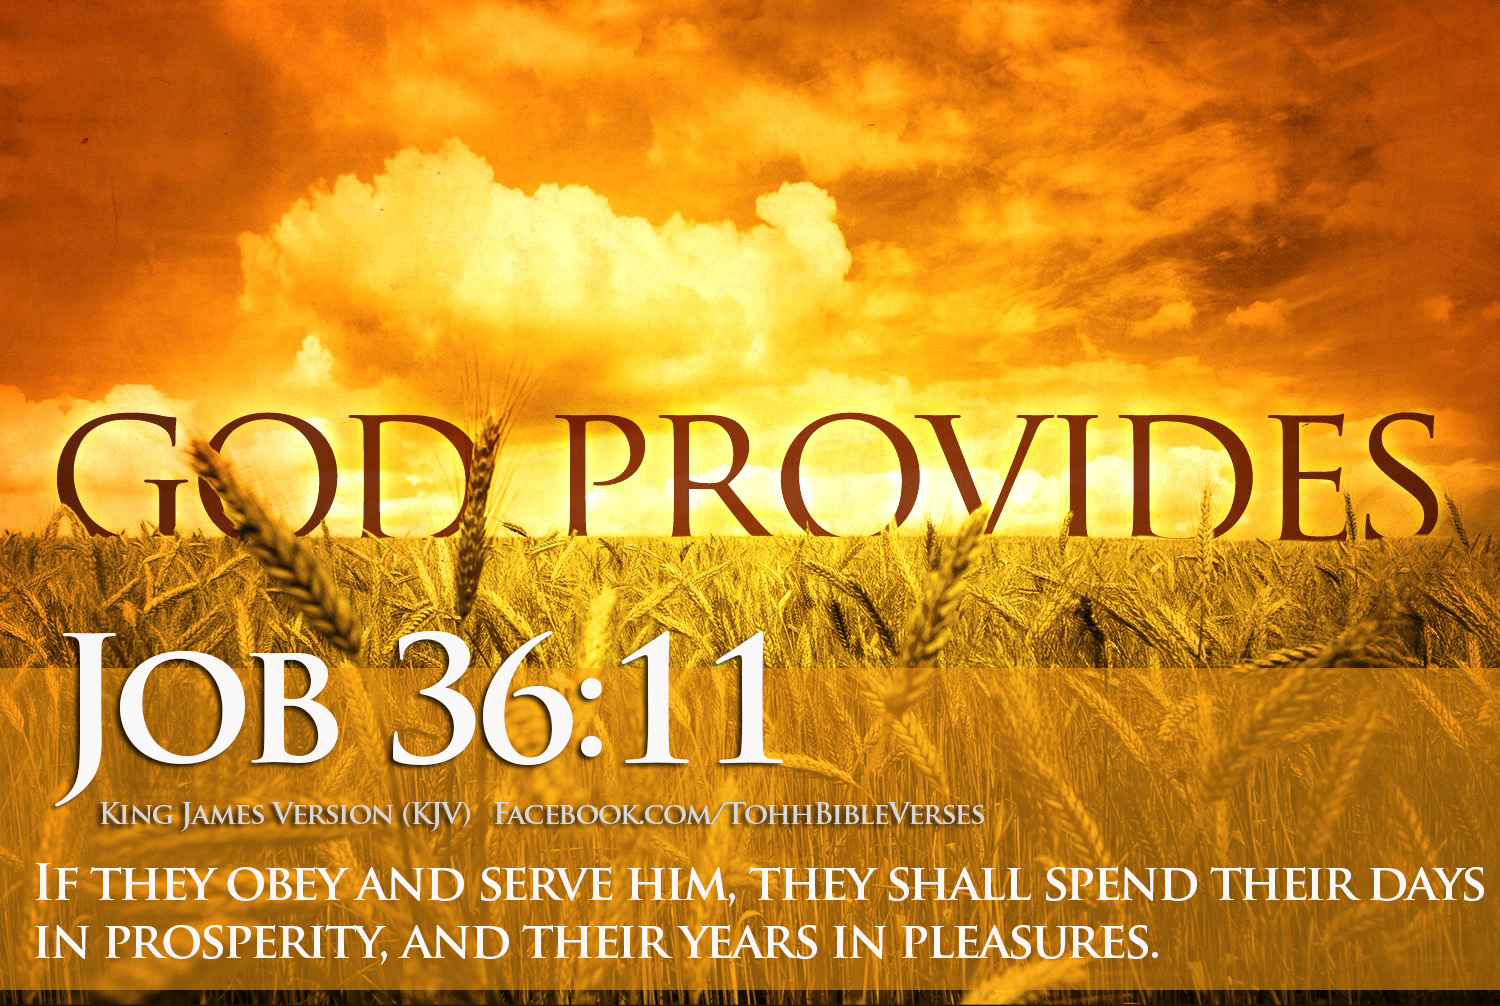 Download HD Bible Verses Wallpaper Prosperity Job 3611 1500x1006